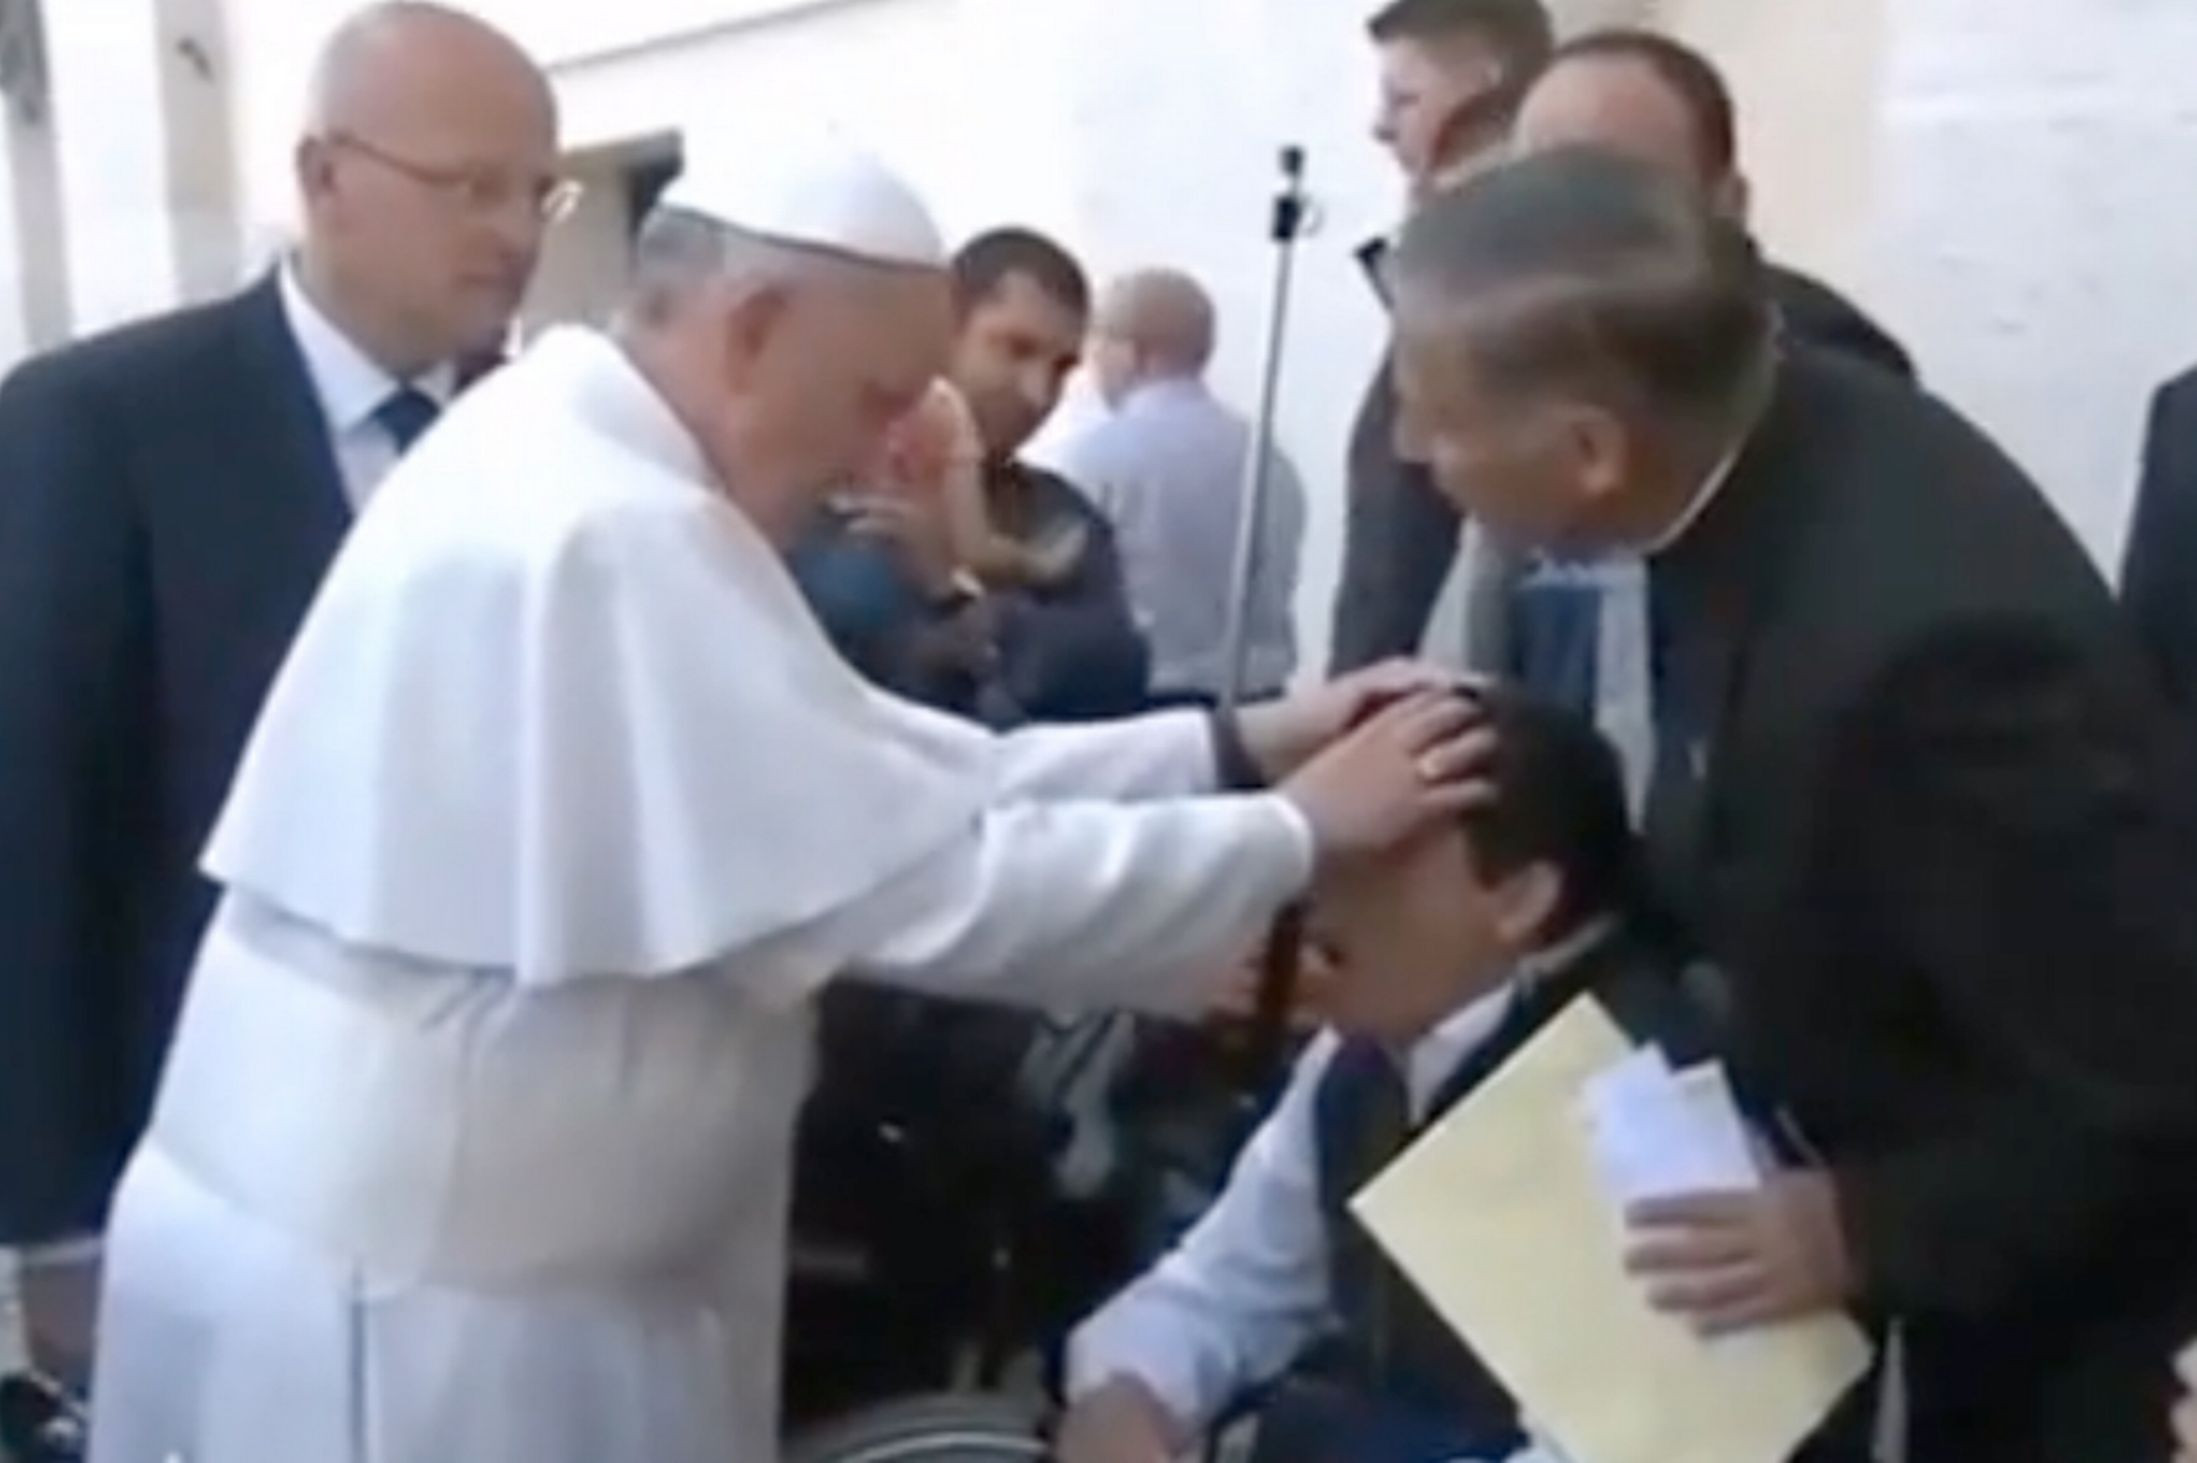 Σάλος με βίντεο που «δείχνει τον Πάπα να κάνει εξορκισμό»